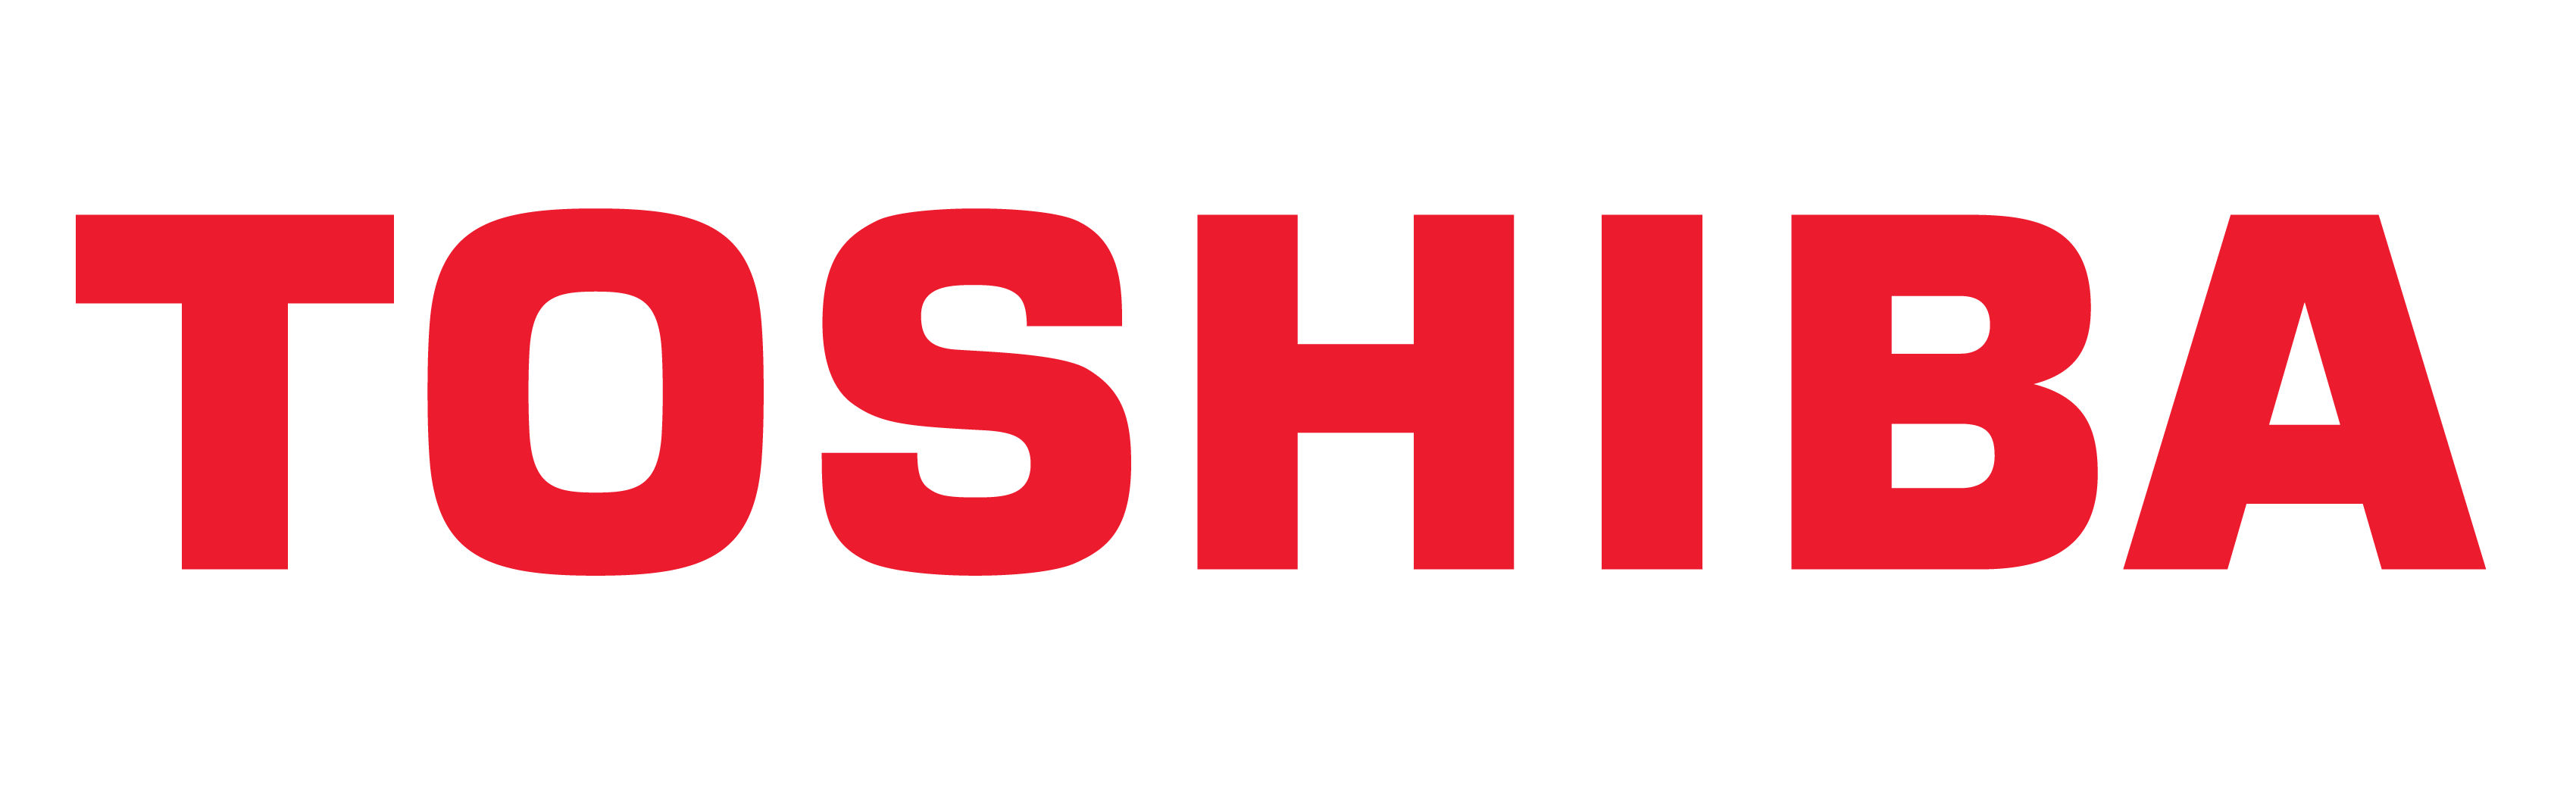 Toshiba merki, Toshiba tákn, merking, saga og þróun